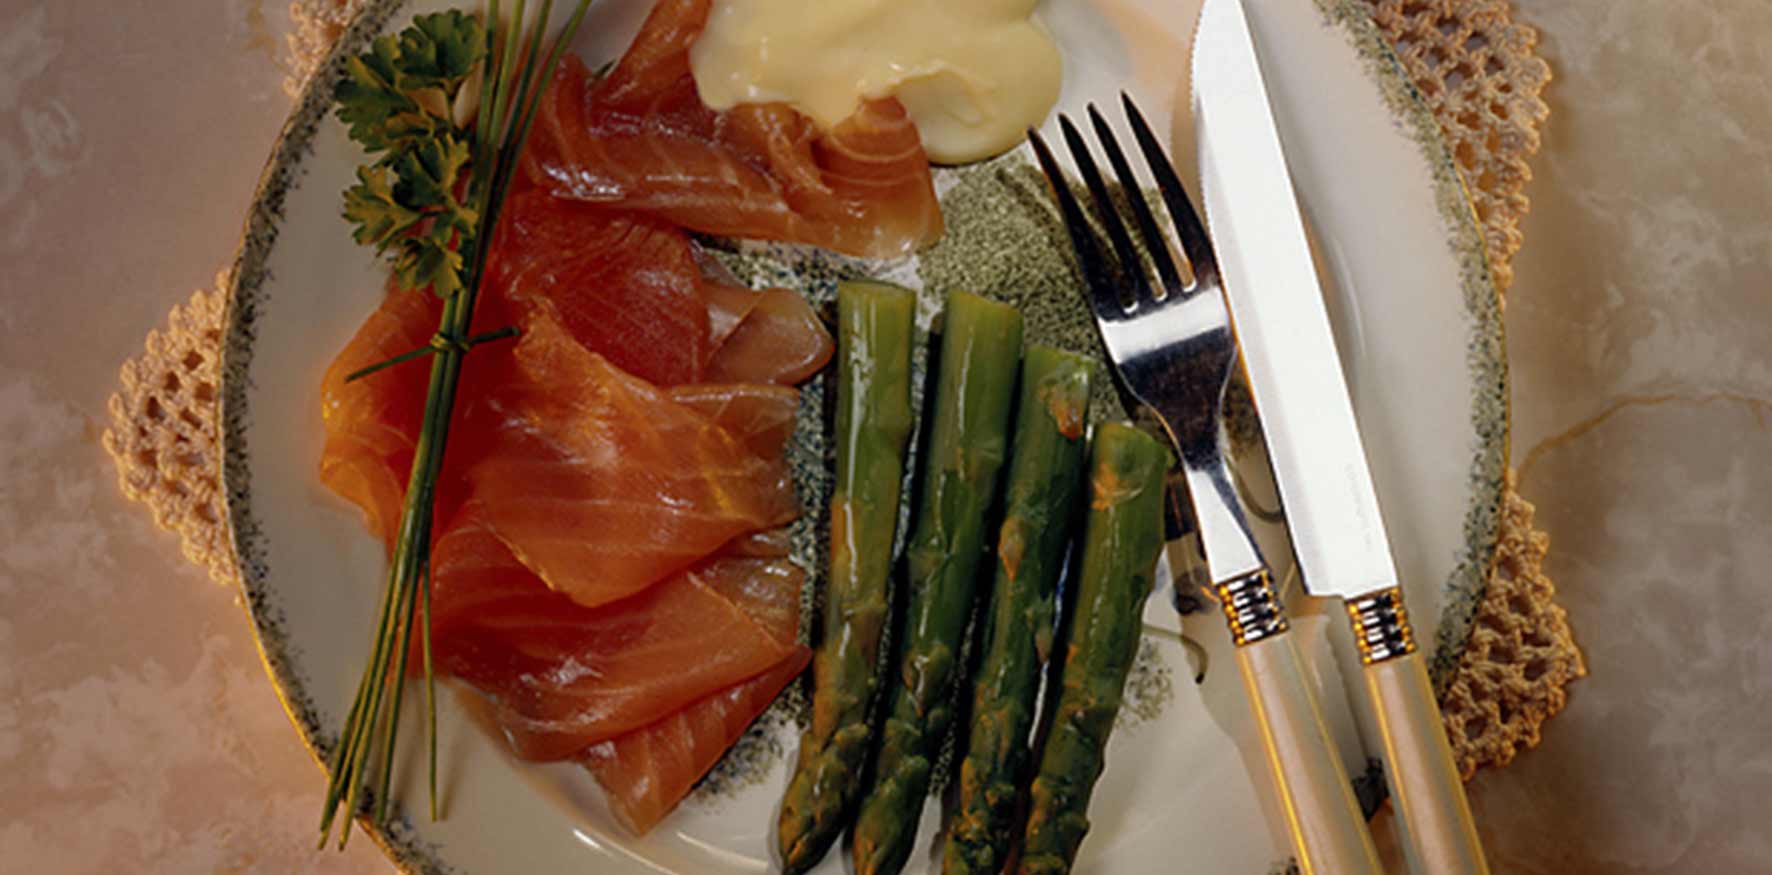 Plate with sliced salmon, asparagus, and mayonnaise sauce